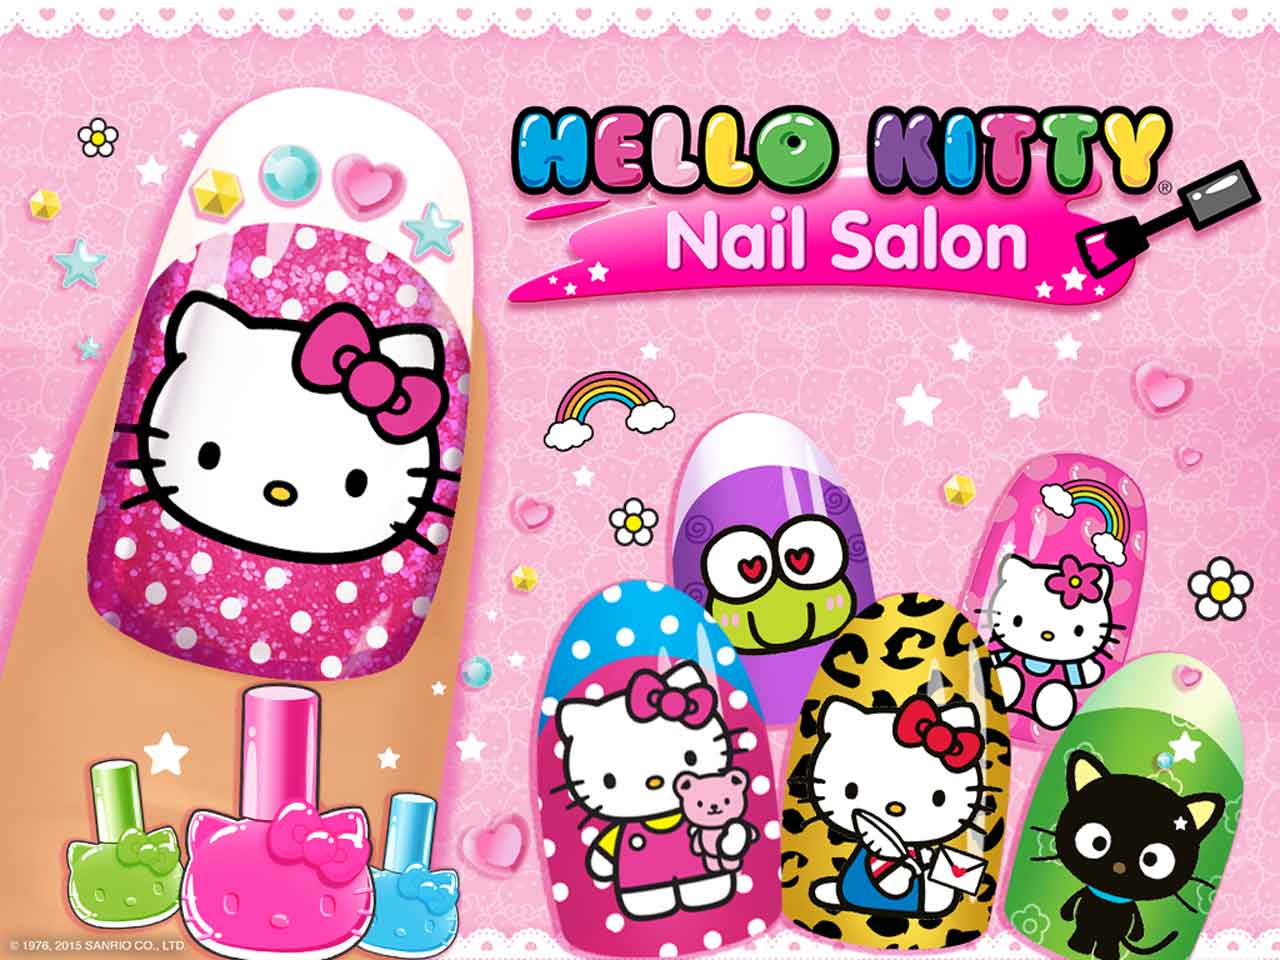 Хэллоу игра. Маникюрный салон hello Kitty игра. Nail Salon Хеллоу Китти. Хелло Китти ногти игра. Игры Хелло Китти для девочек.